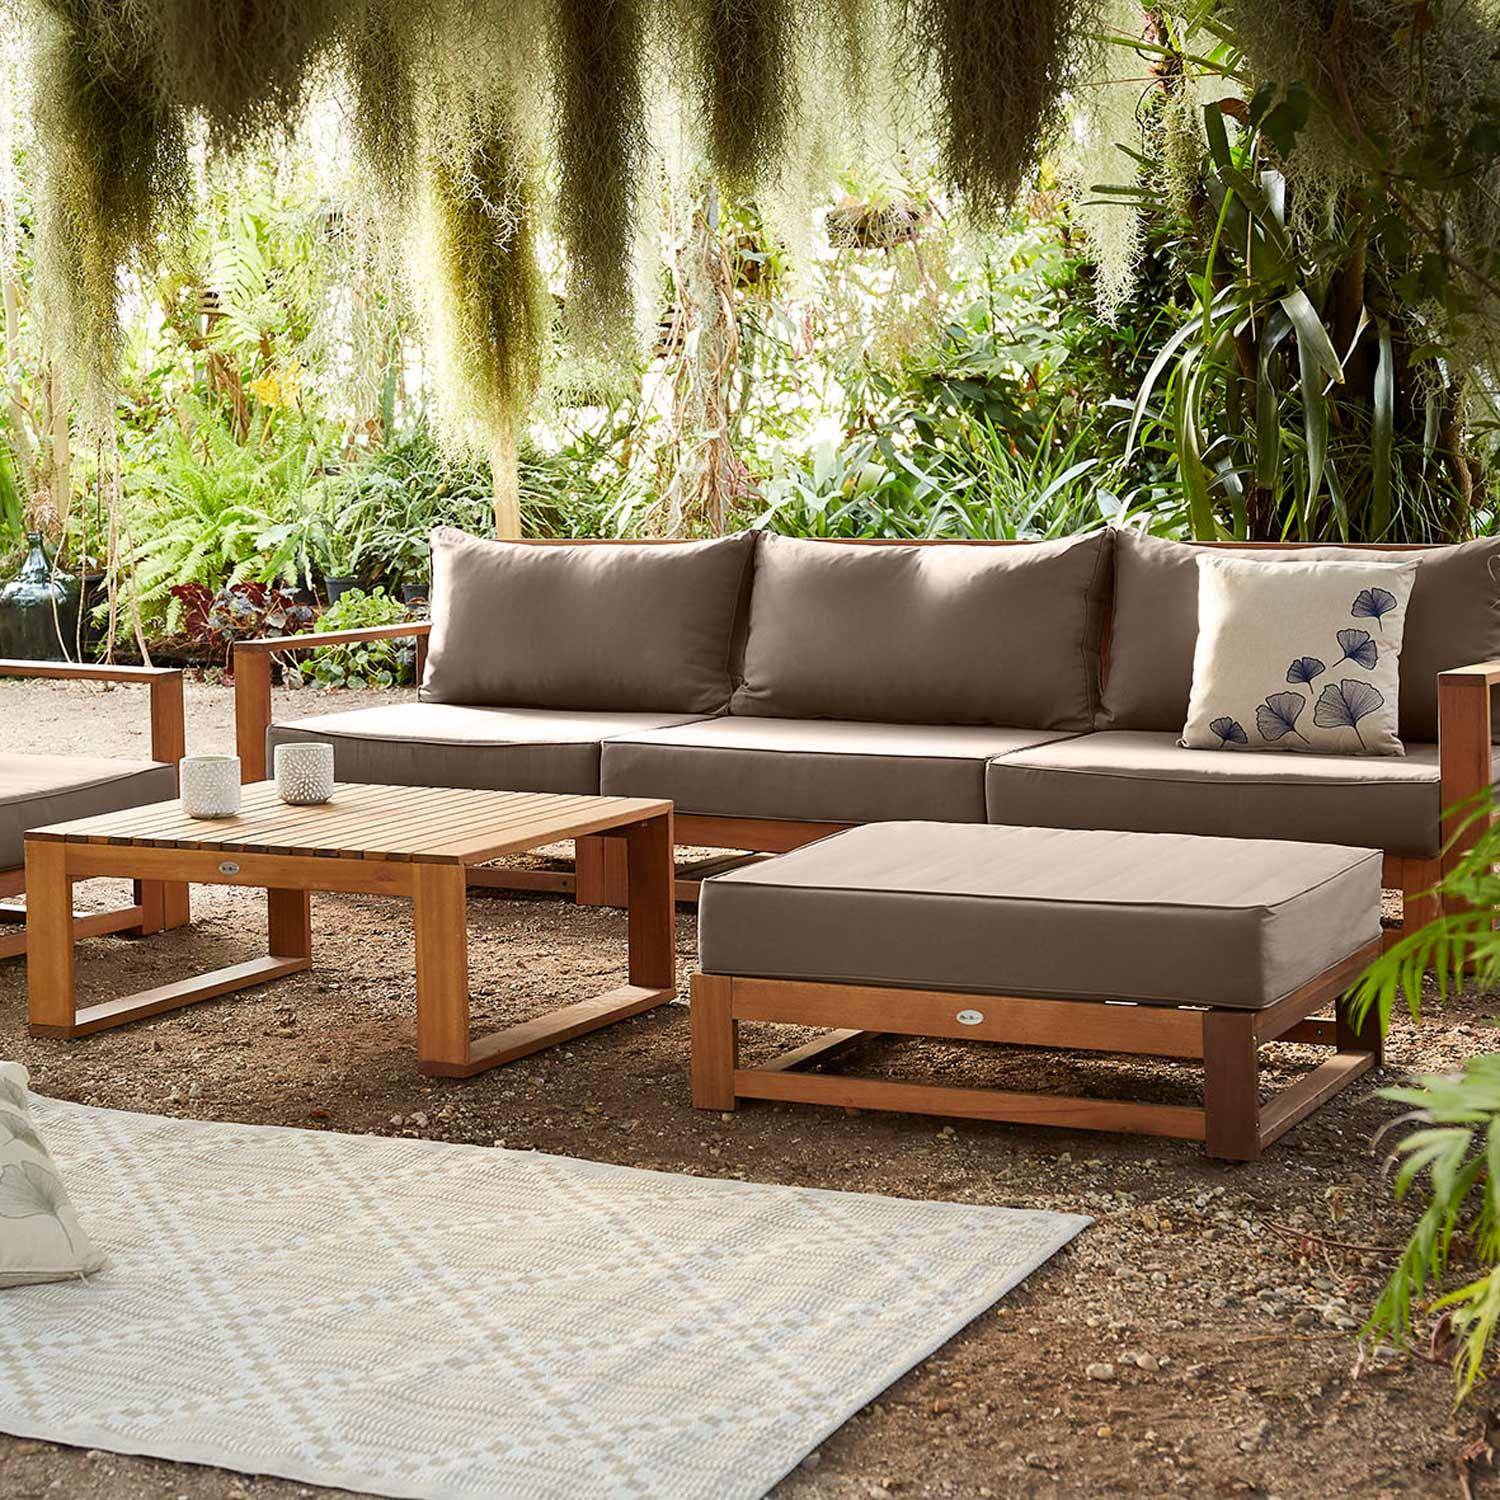 Gartenmöbel aus Holz mit 5 Sitzplätzen - Mendoza - Taupefarbene Kissen, Sofa, Sessel und Couchtisch aus Akazie, 6 modulare Elemente, Design Photo1